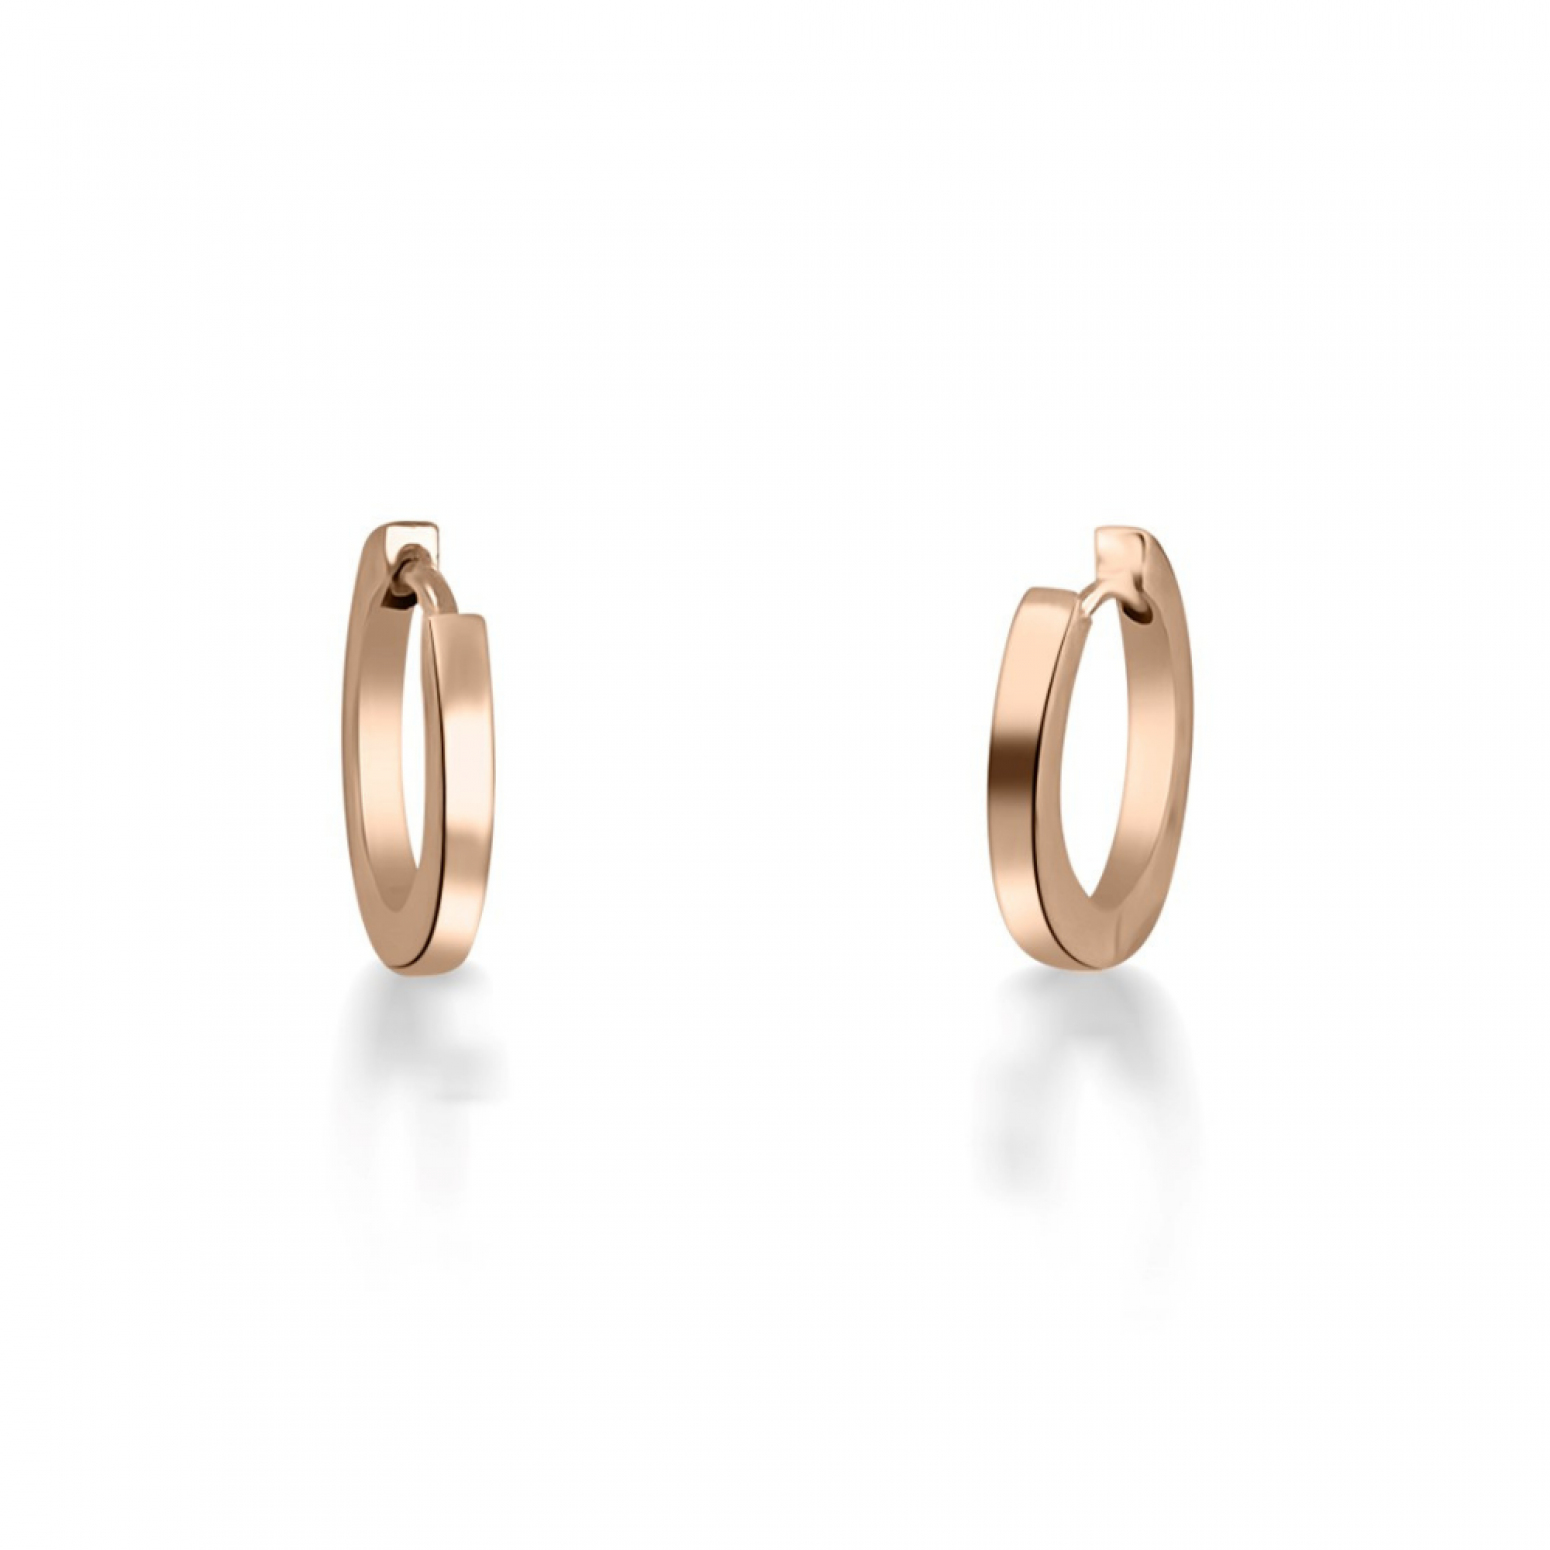 Hoop earrings round K9 pink gold, sk3512 EARRINGS Κοσμηματα - chrilia.gr